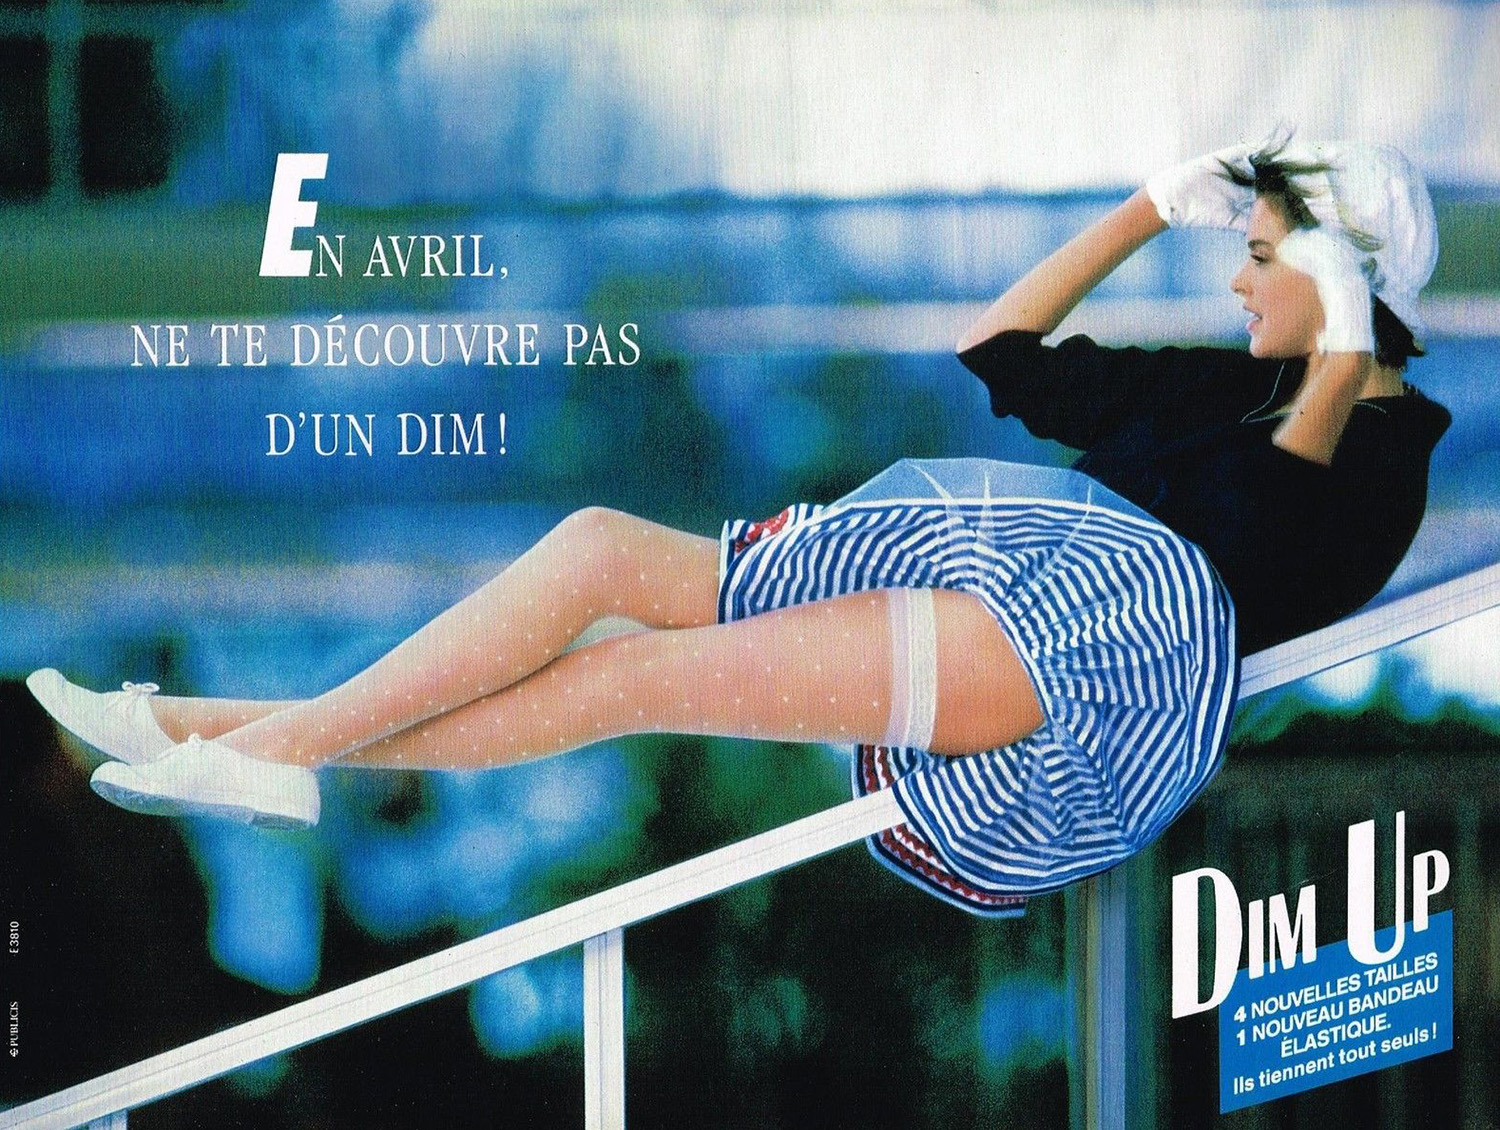 Publicité Advertising 1988  Lingerie DIM collants bas DIM UP sous vetement 